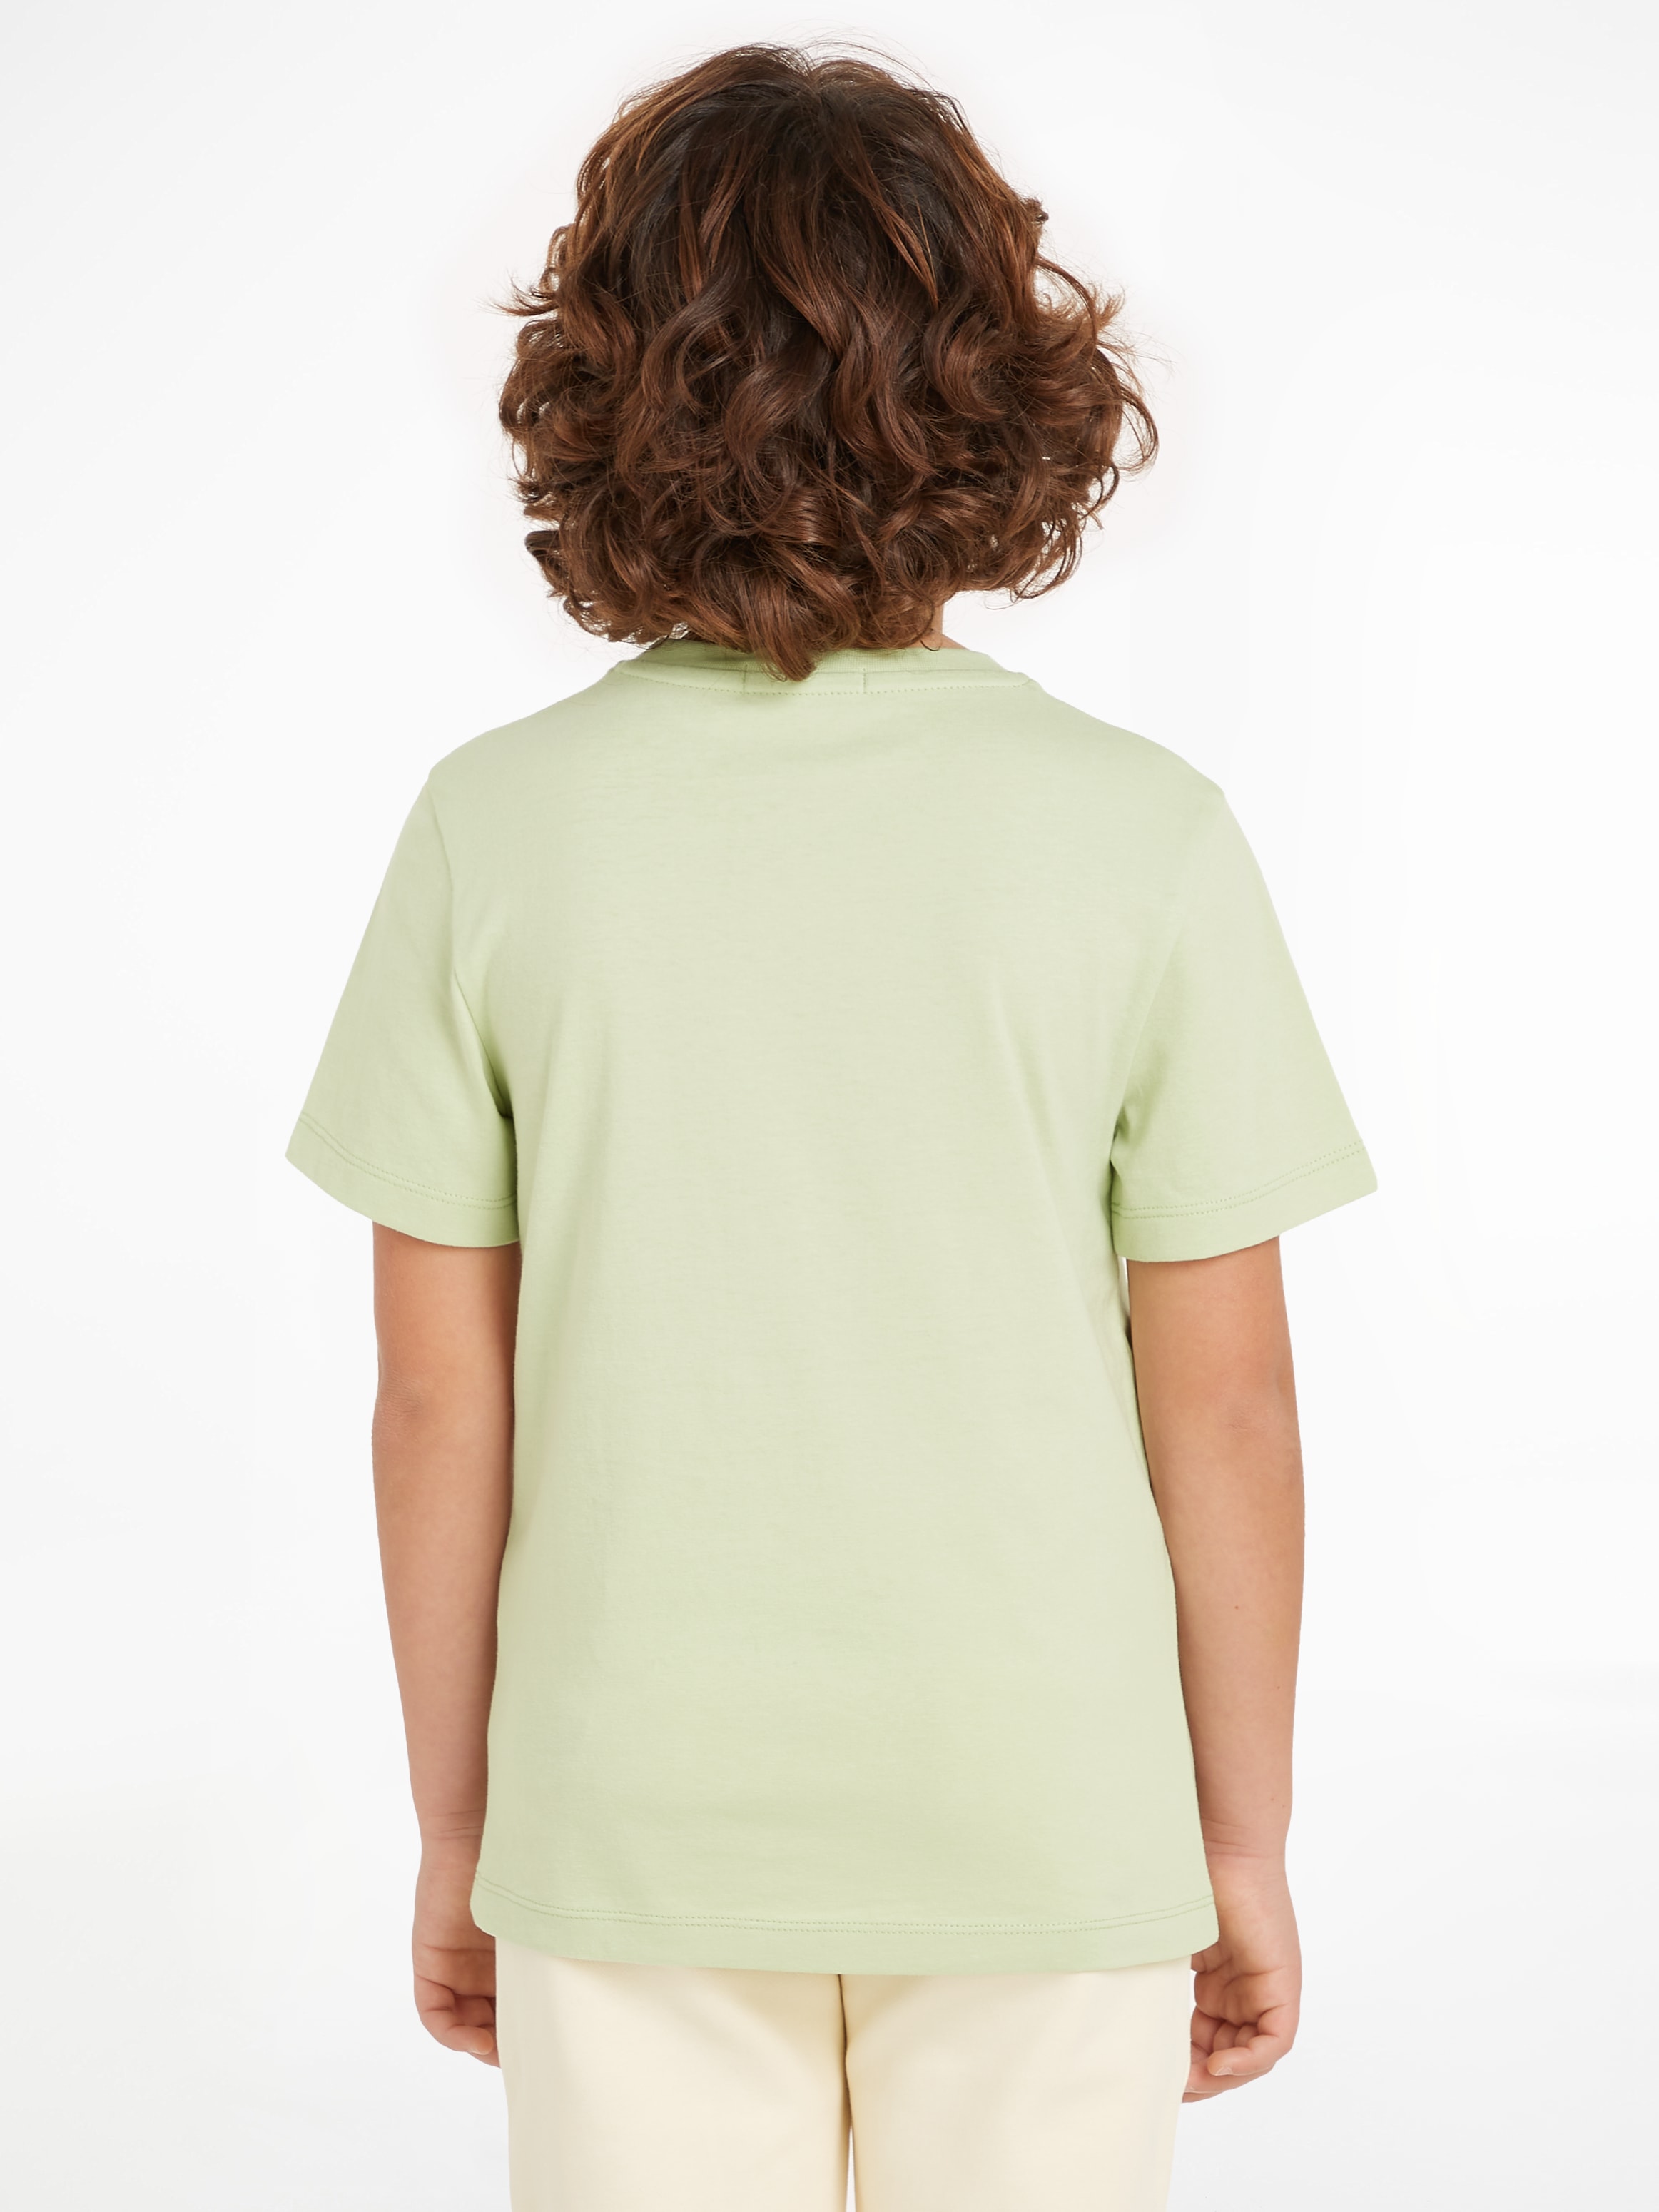 Calvin Klein Jeans T-Shirt »MAXI HERO FLOCK LOGO T-SHIRT«, für Kinder bis 16 Jahre